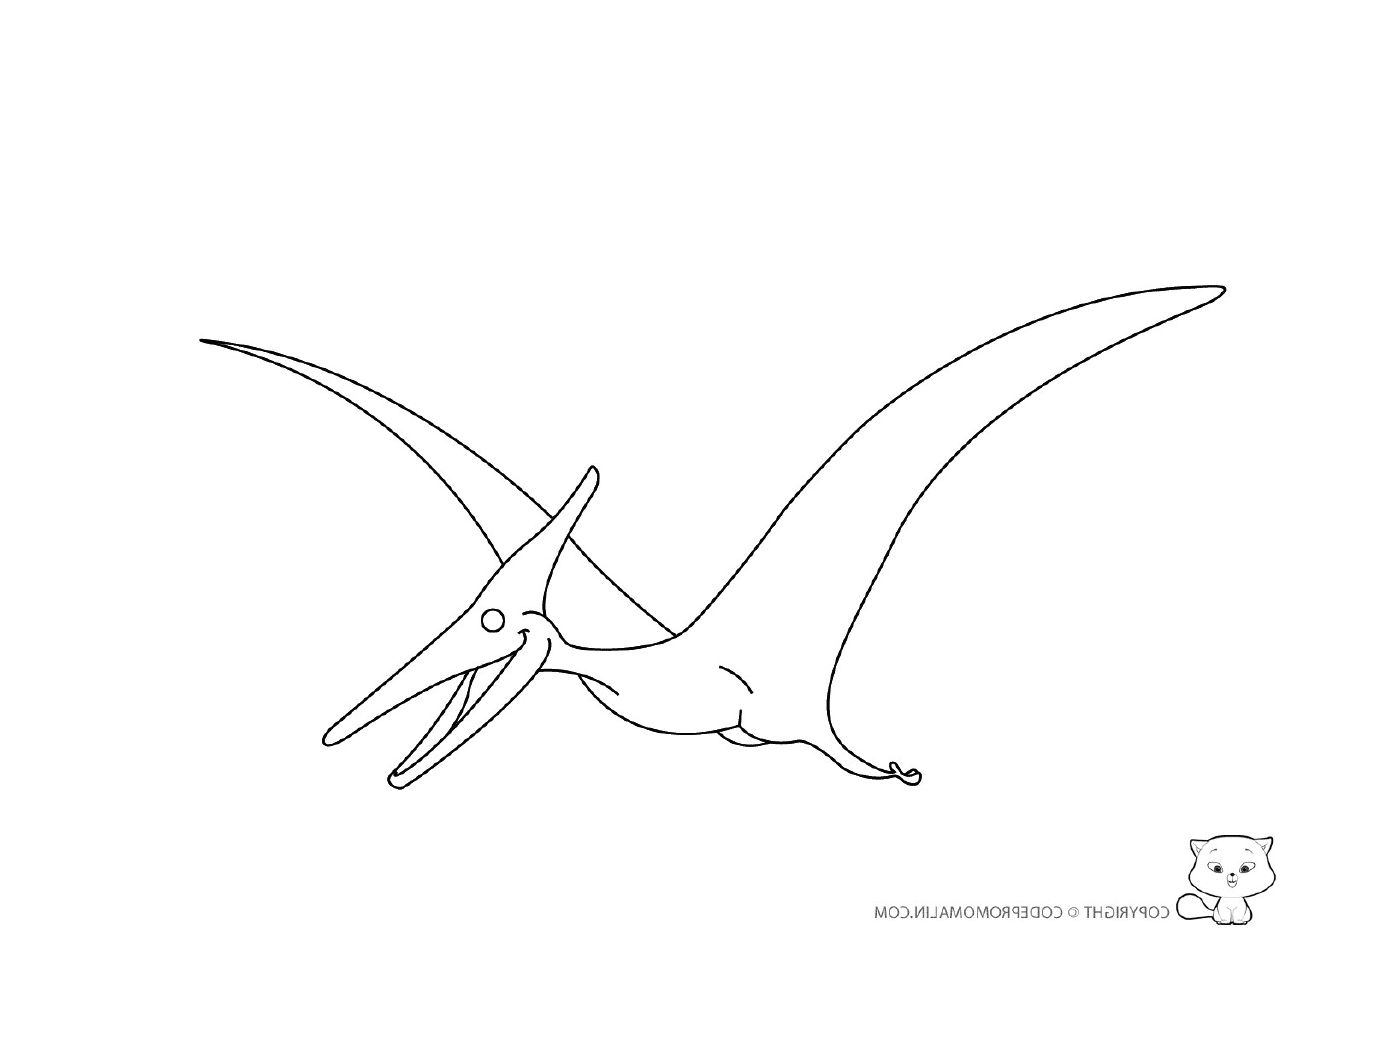  Pterodactylus im Flug 